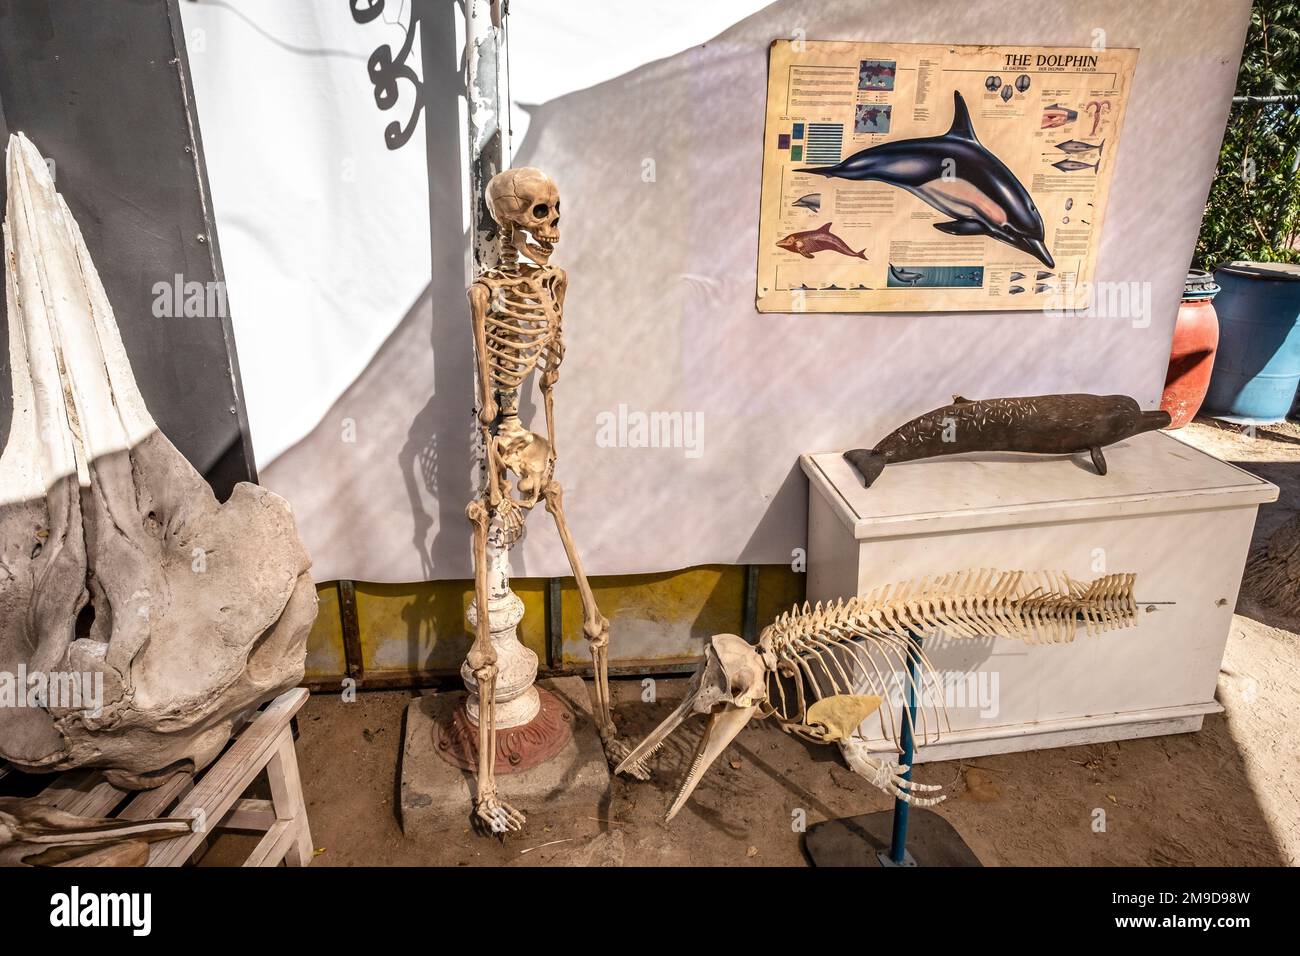 Squelette humain et dauphin exposé au Museo de la Ballena, la Paz, Baja California, Mexique Banque D'Images